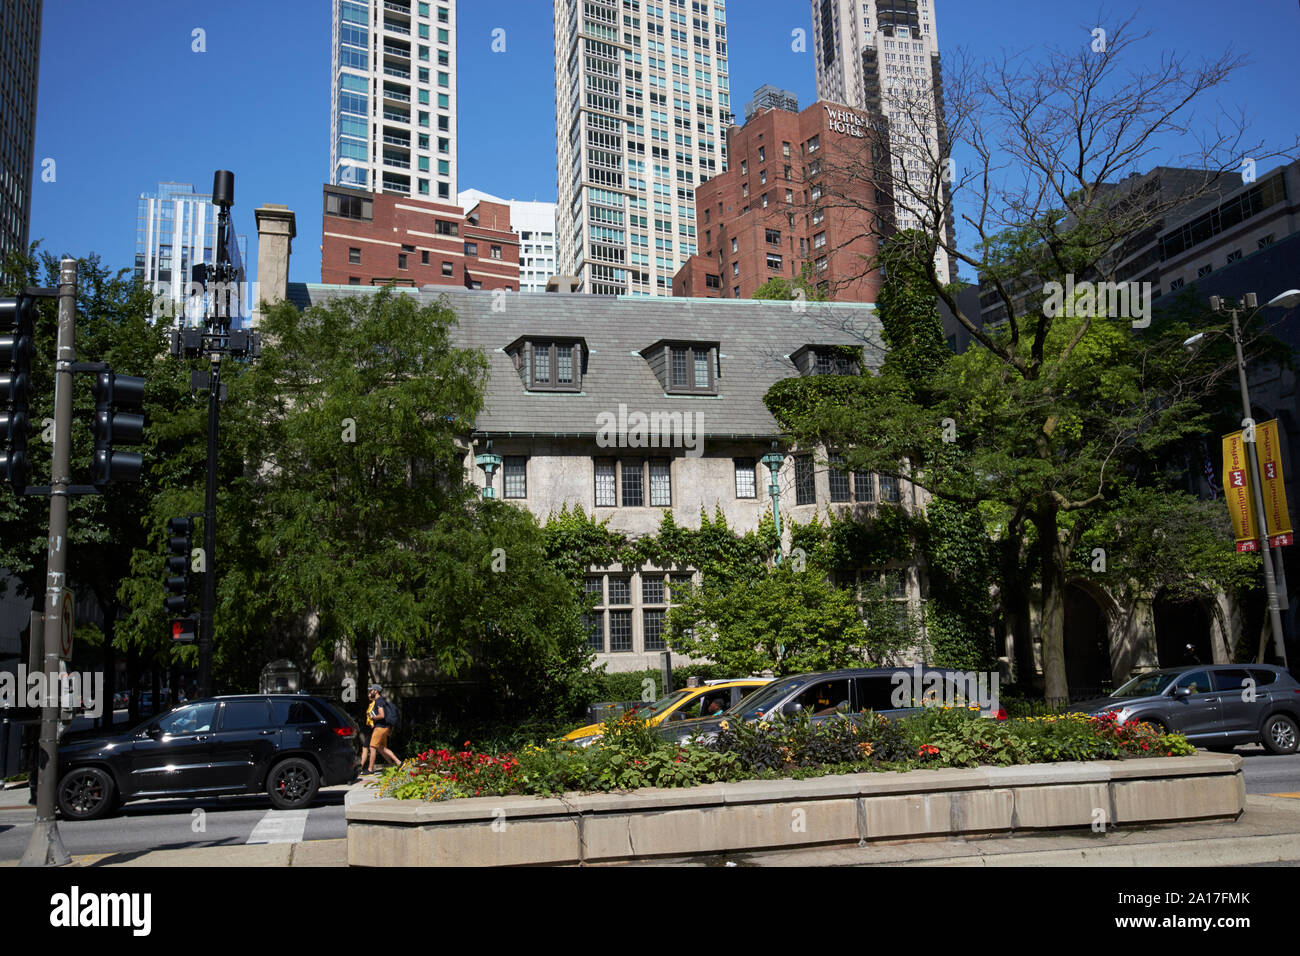 Casa Parrocchiale della quarta chiesa presbiteriana di Chicago Chicago Illinois stati uniti d'America Foto Stock